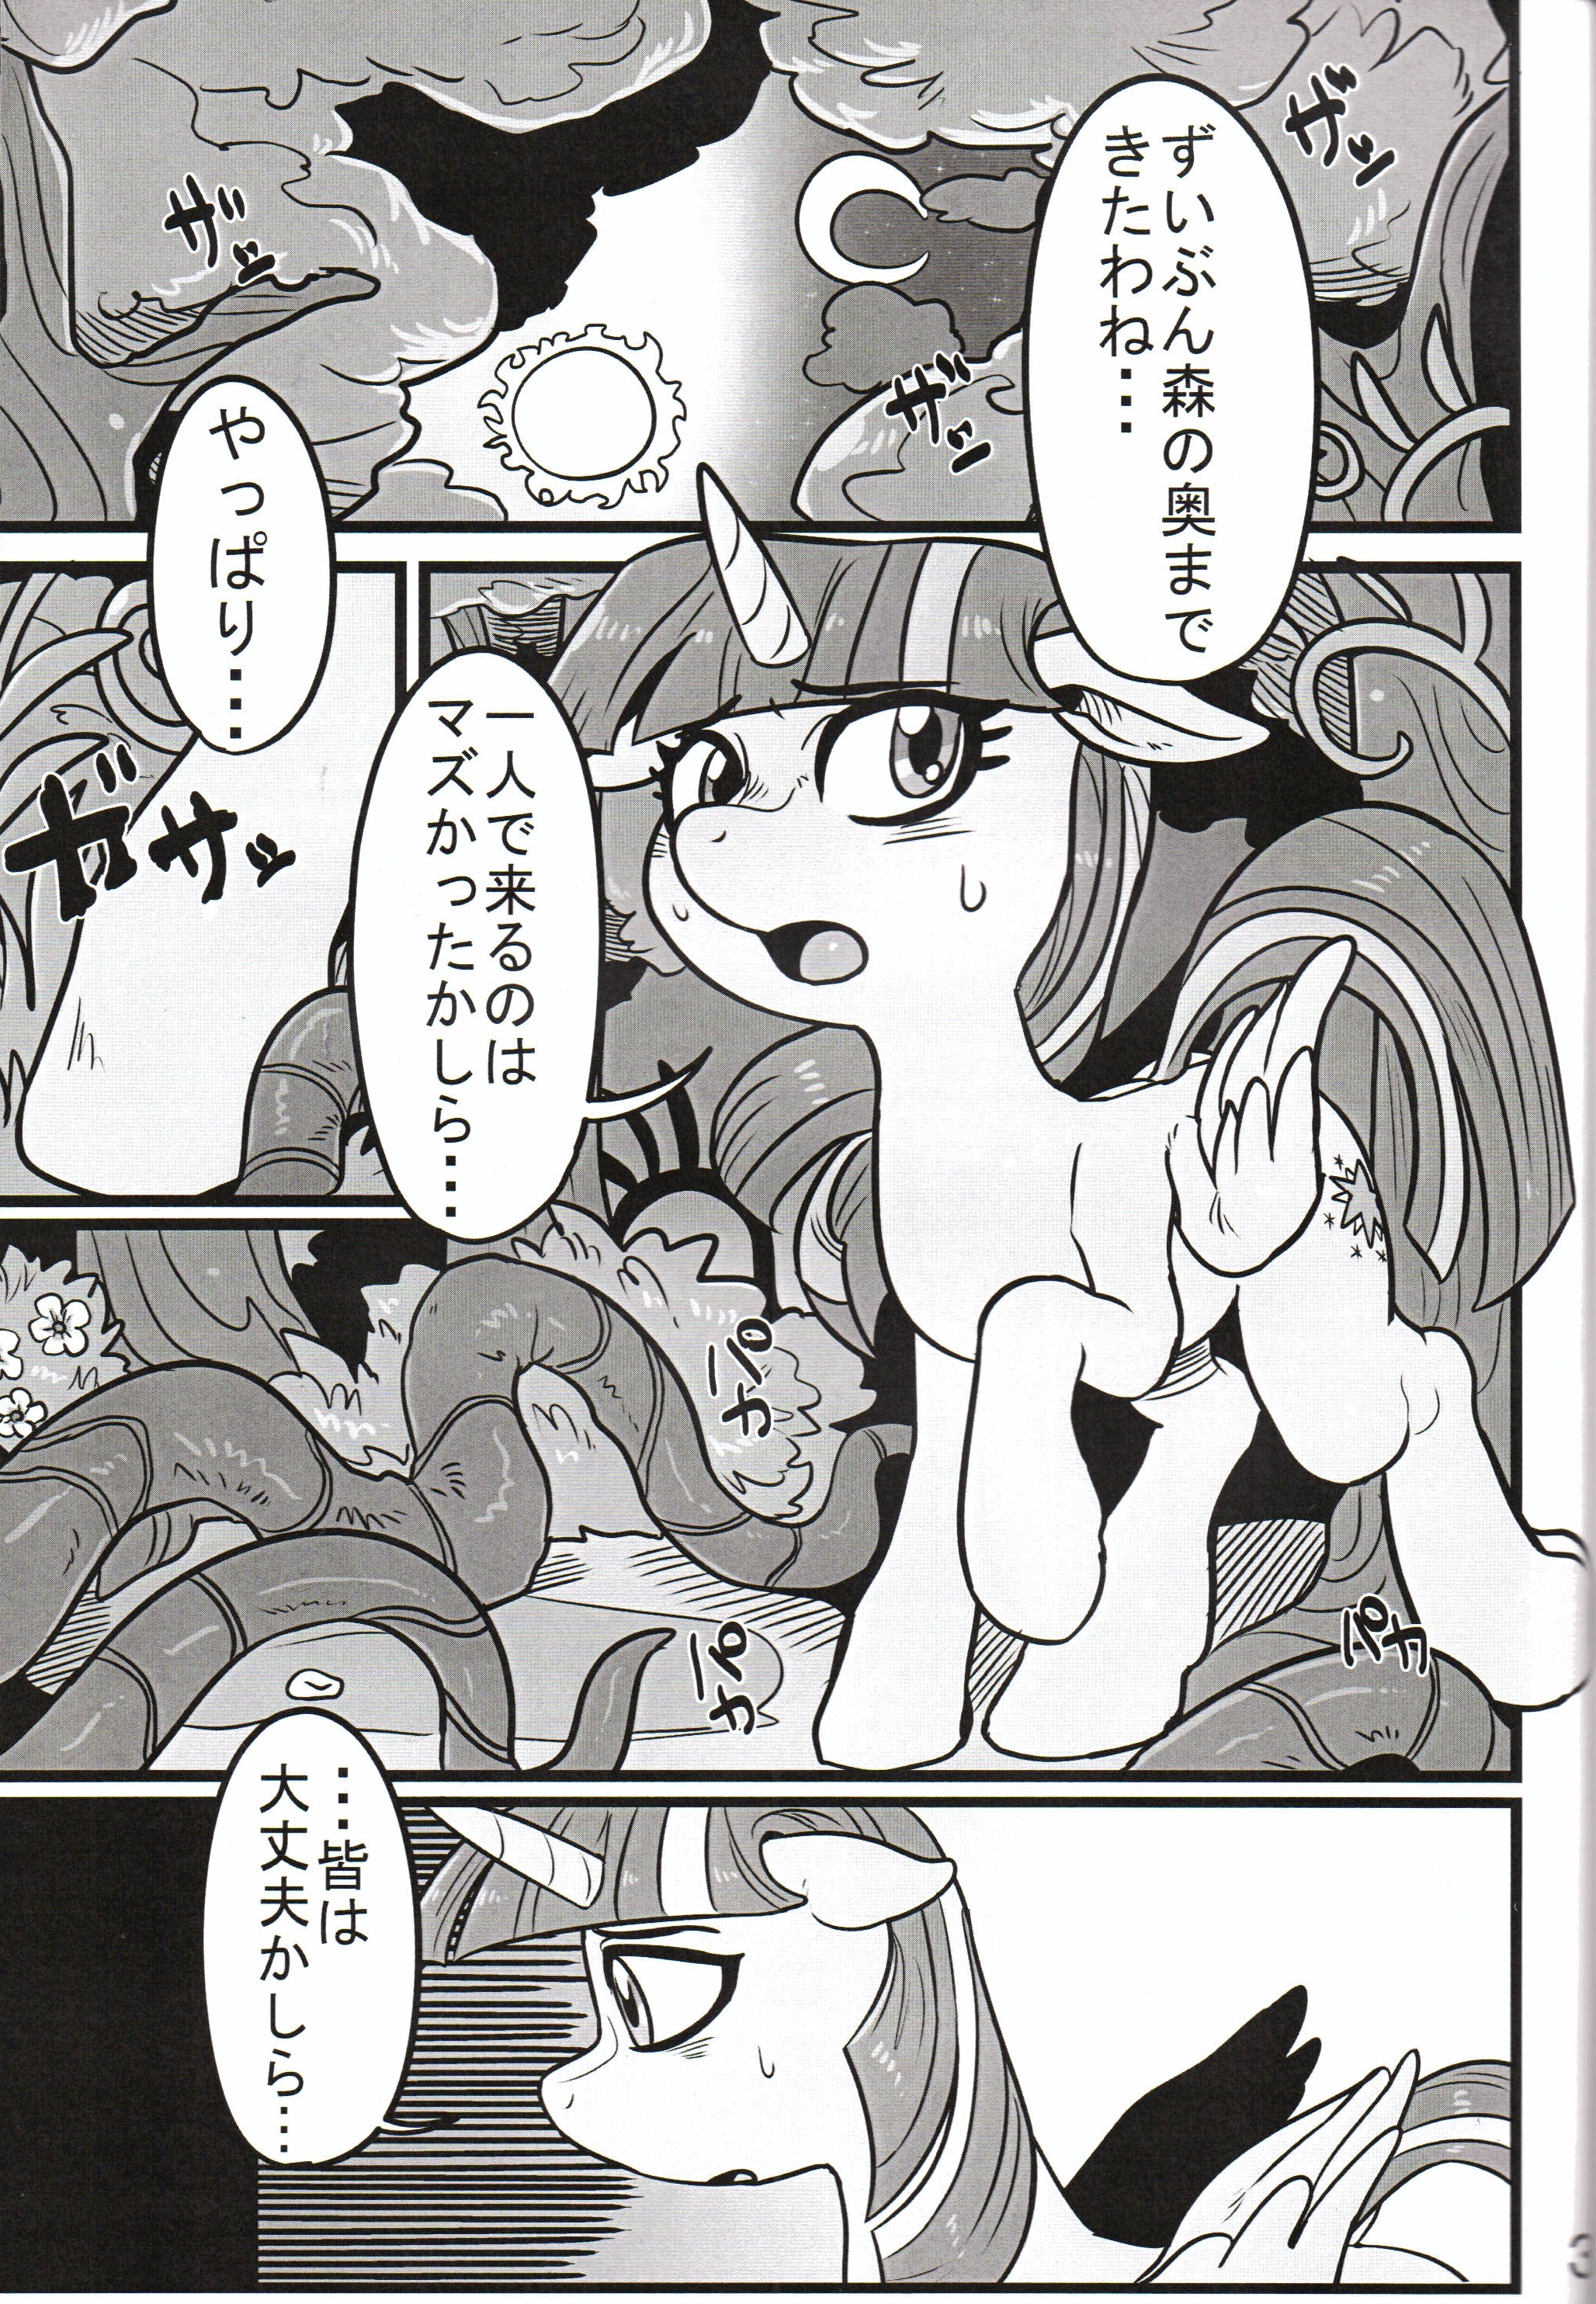 Fur st 10 Tetsugakuteki Zombie Nekubila Yuujou no Naedoko My Little Pony Friendship Is Magic00